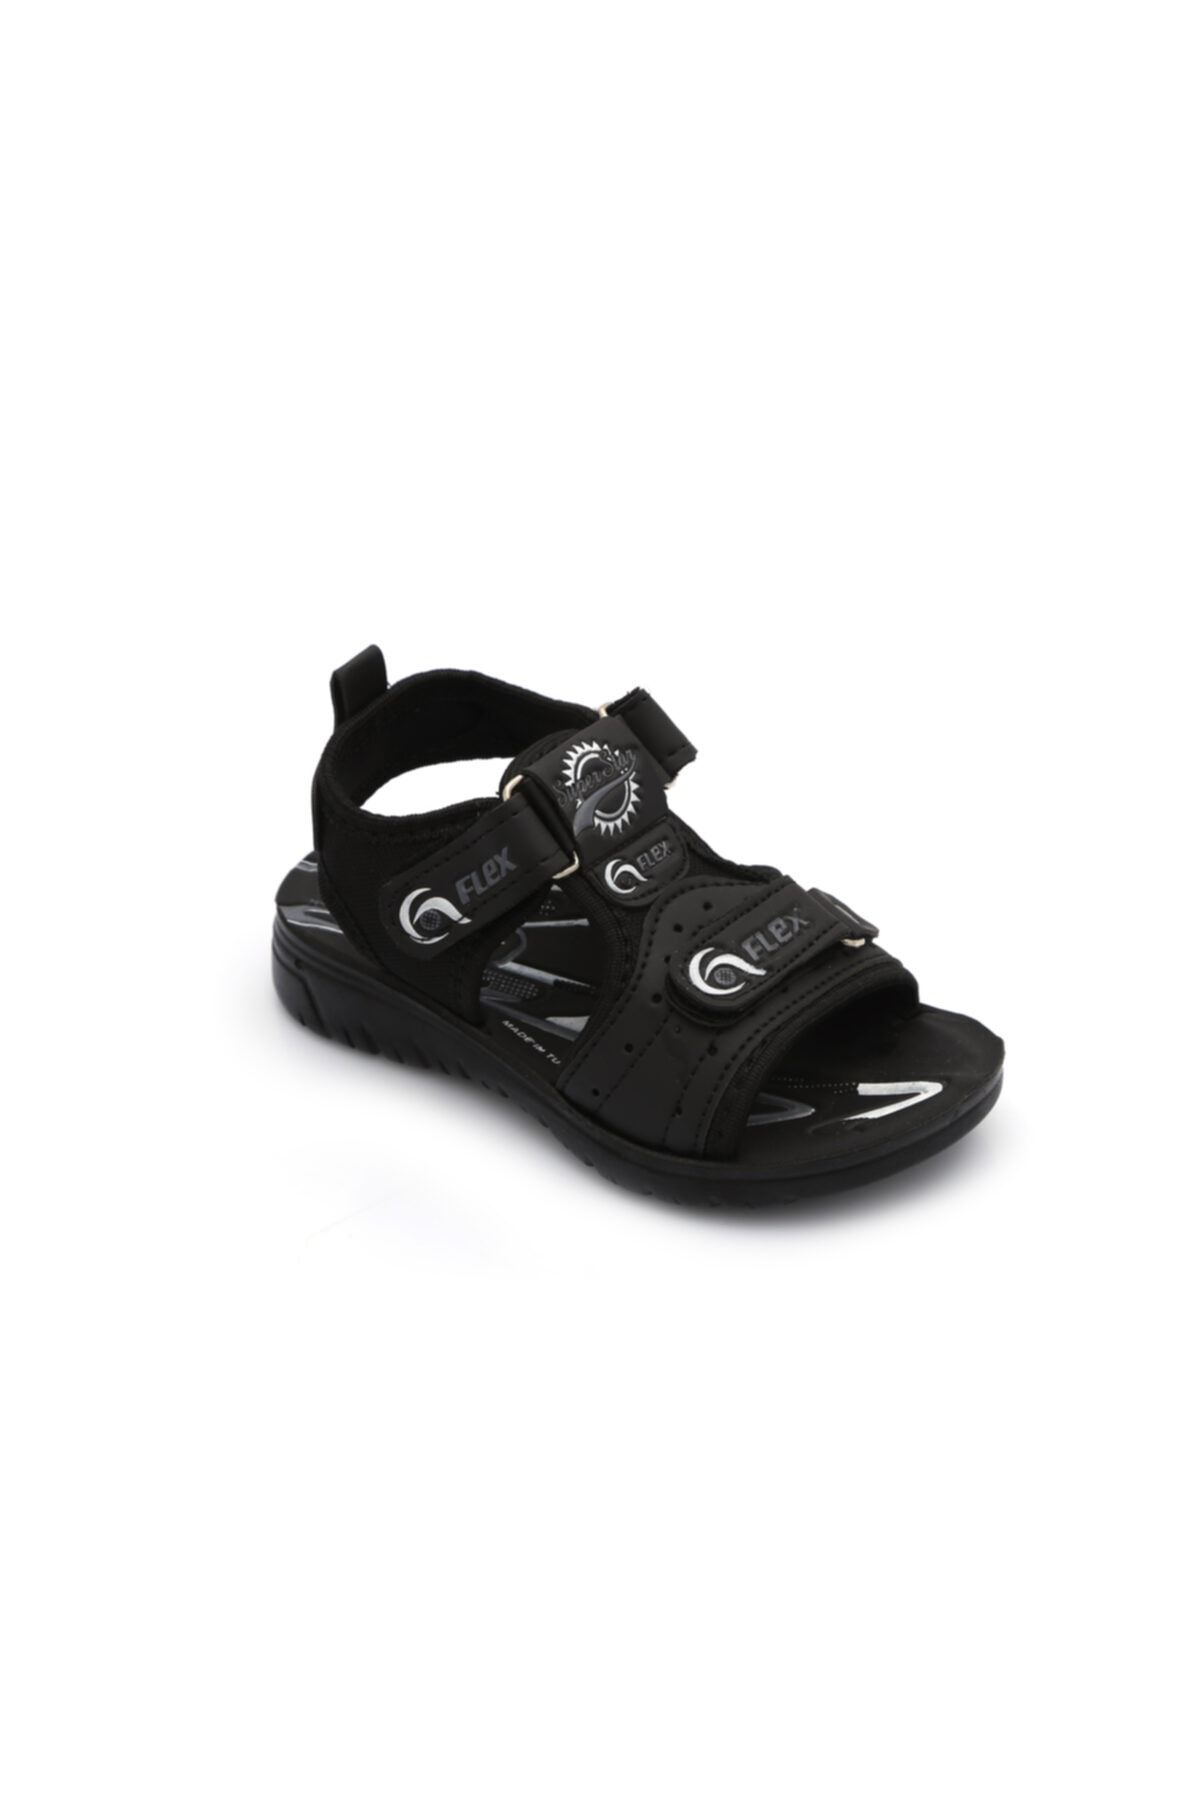 GOFLEX Erkek Çocuk Siyah Cırtlı Sandalet